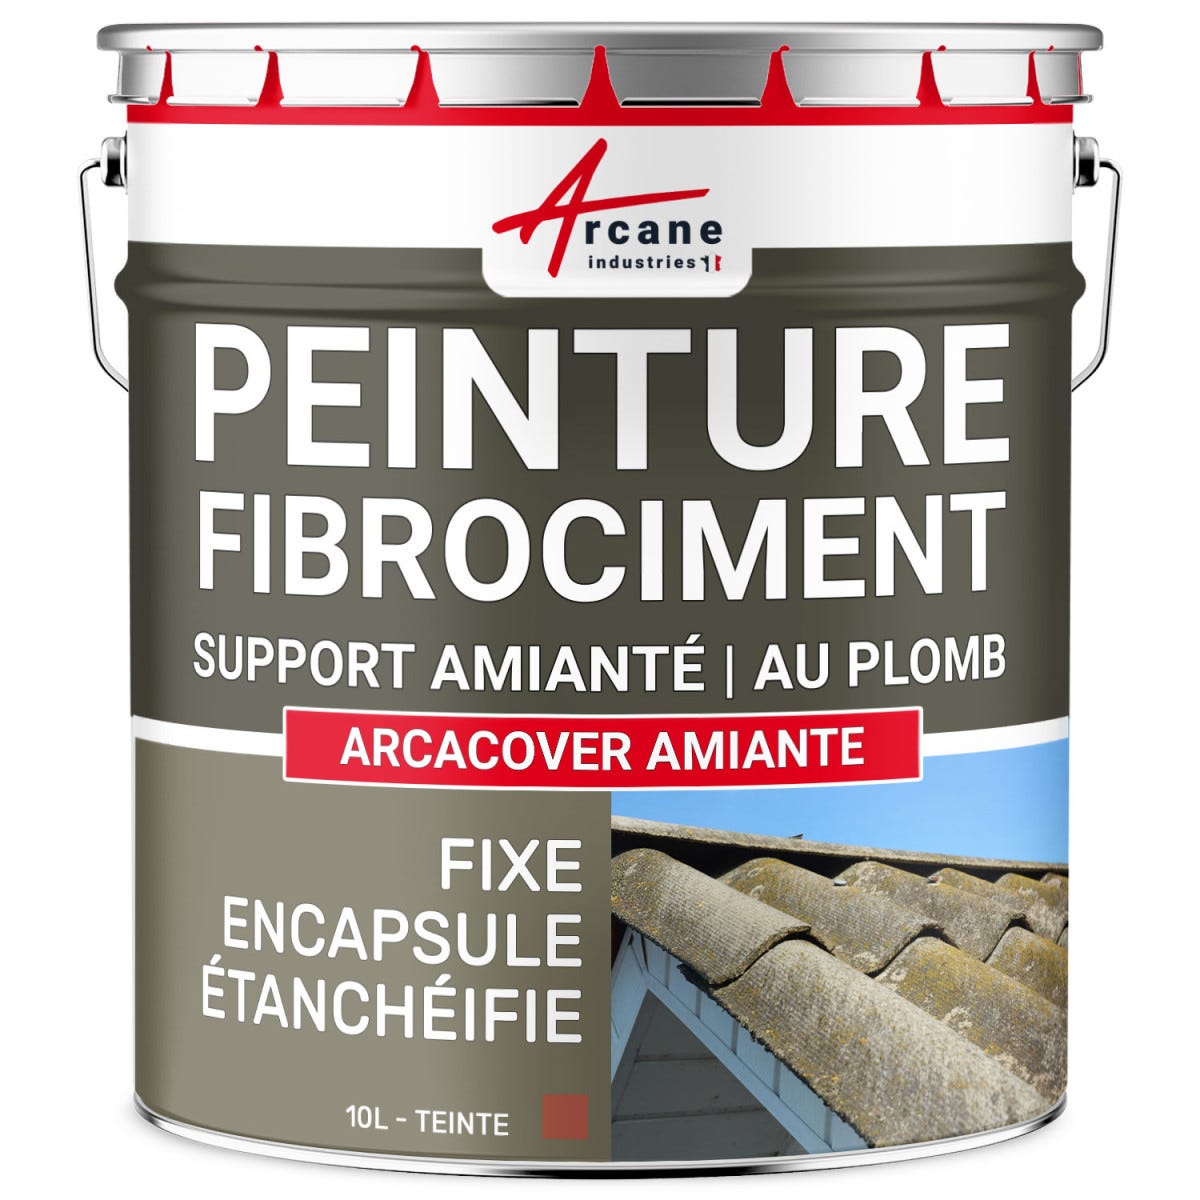 Peinture fibro ciment pour encapsulage support amiante / plomb : ARCACOVER AMIANTE. Tuile - 10 LARCANE INDUSTRIES 0